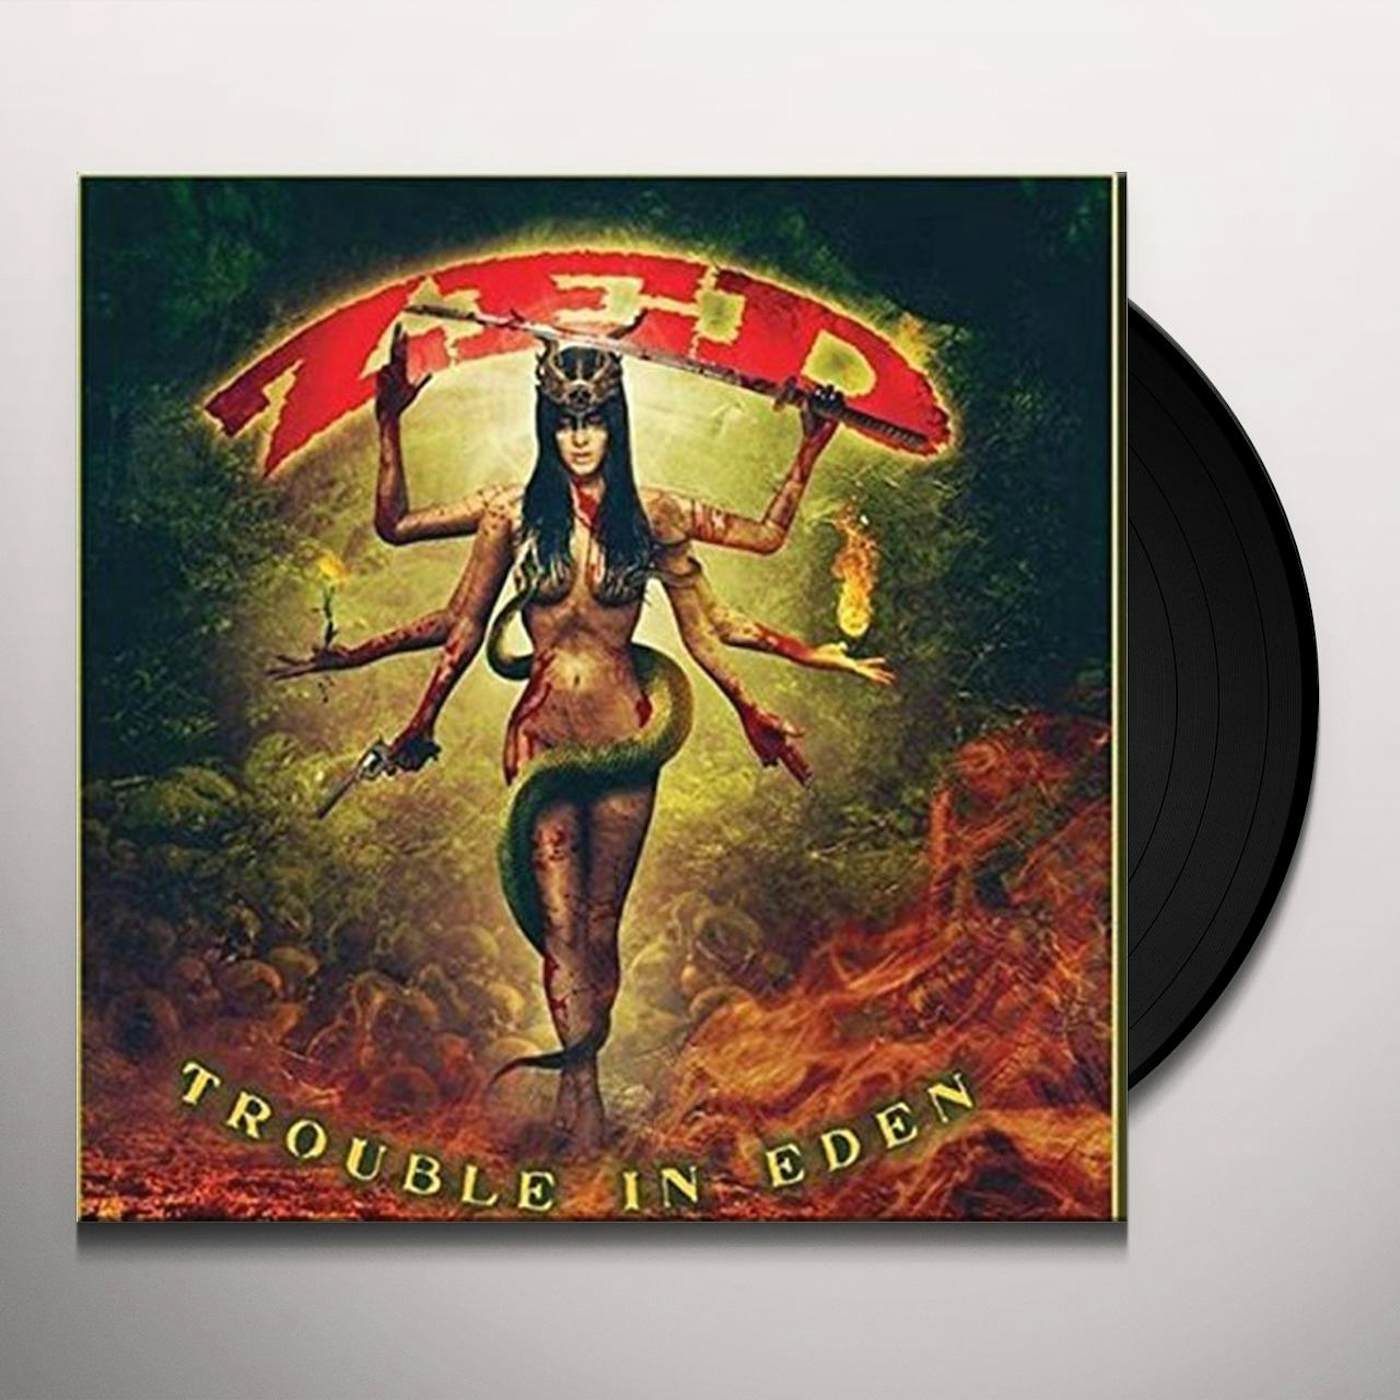 Zed Trouble In Eden Vinyl Record